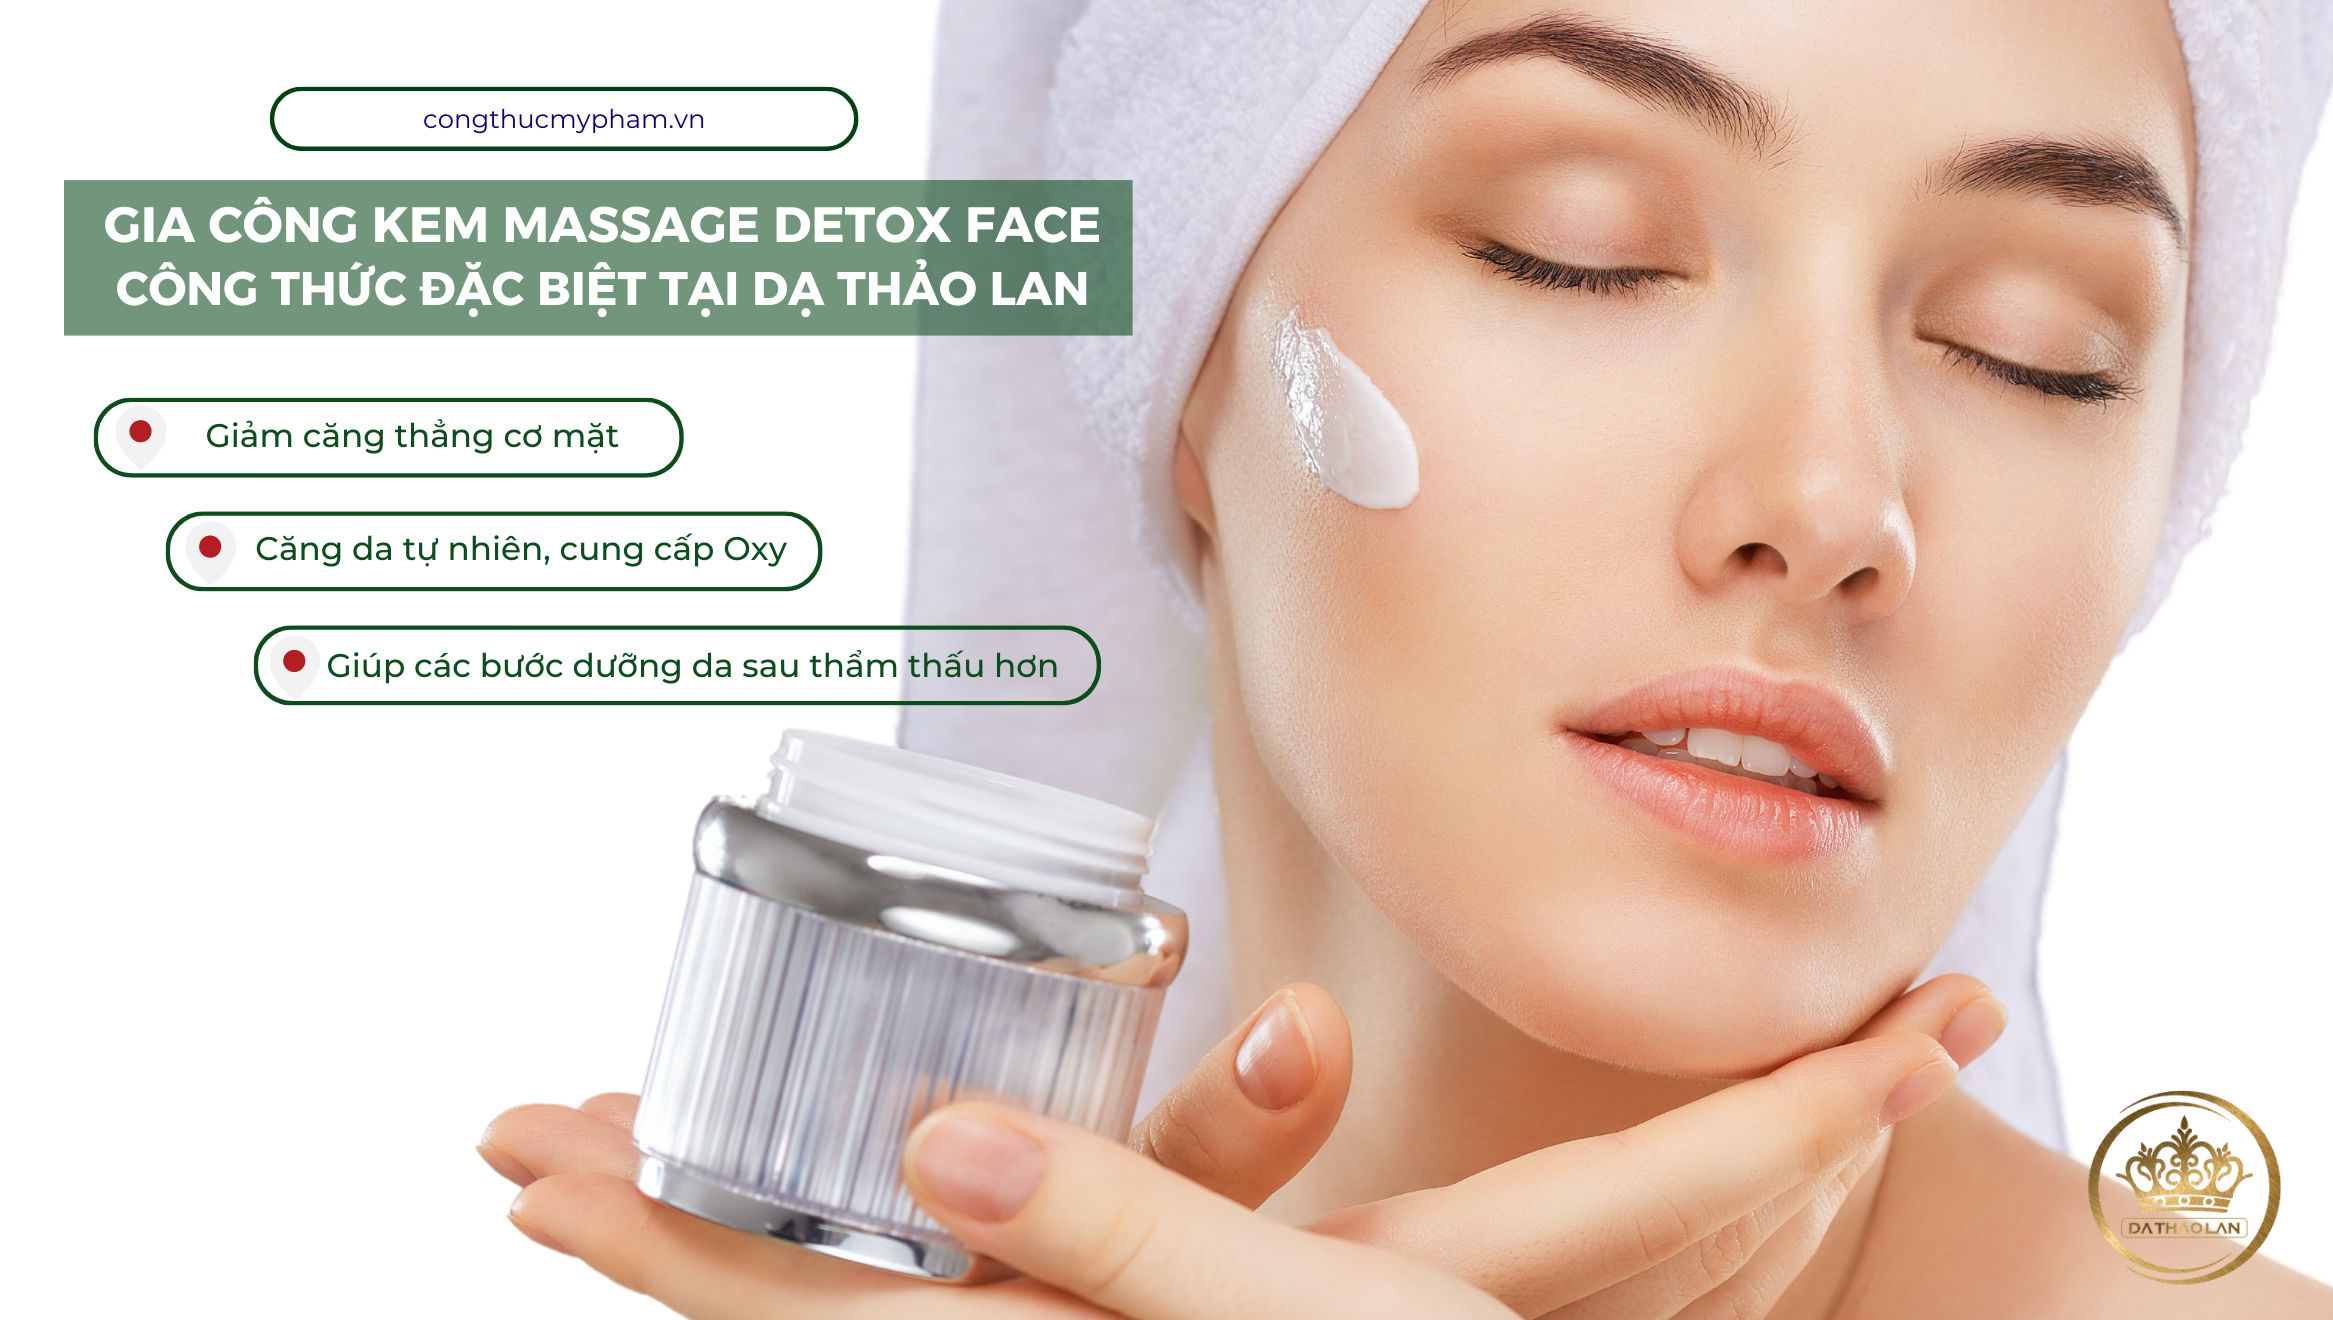 Gia công kem massage detox face, công thức đột phá đặc biệt tại Nhà máy gia công mỹ phẩm DẠ THẢO LAN